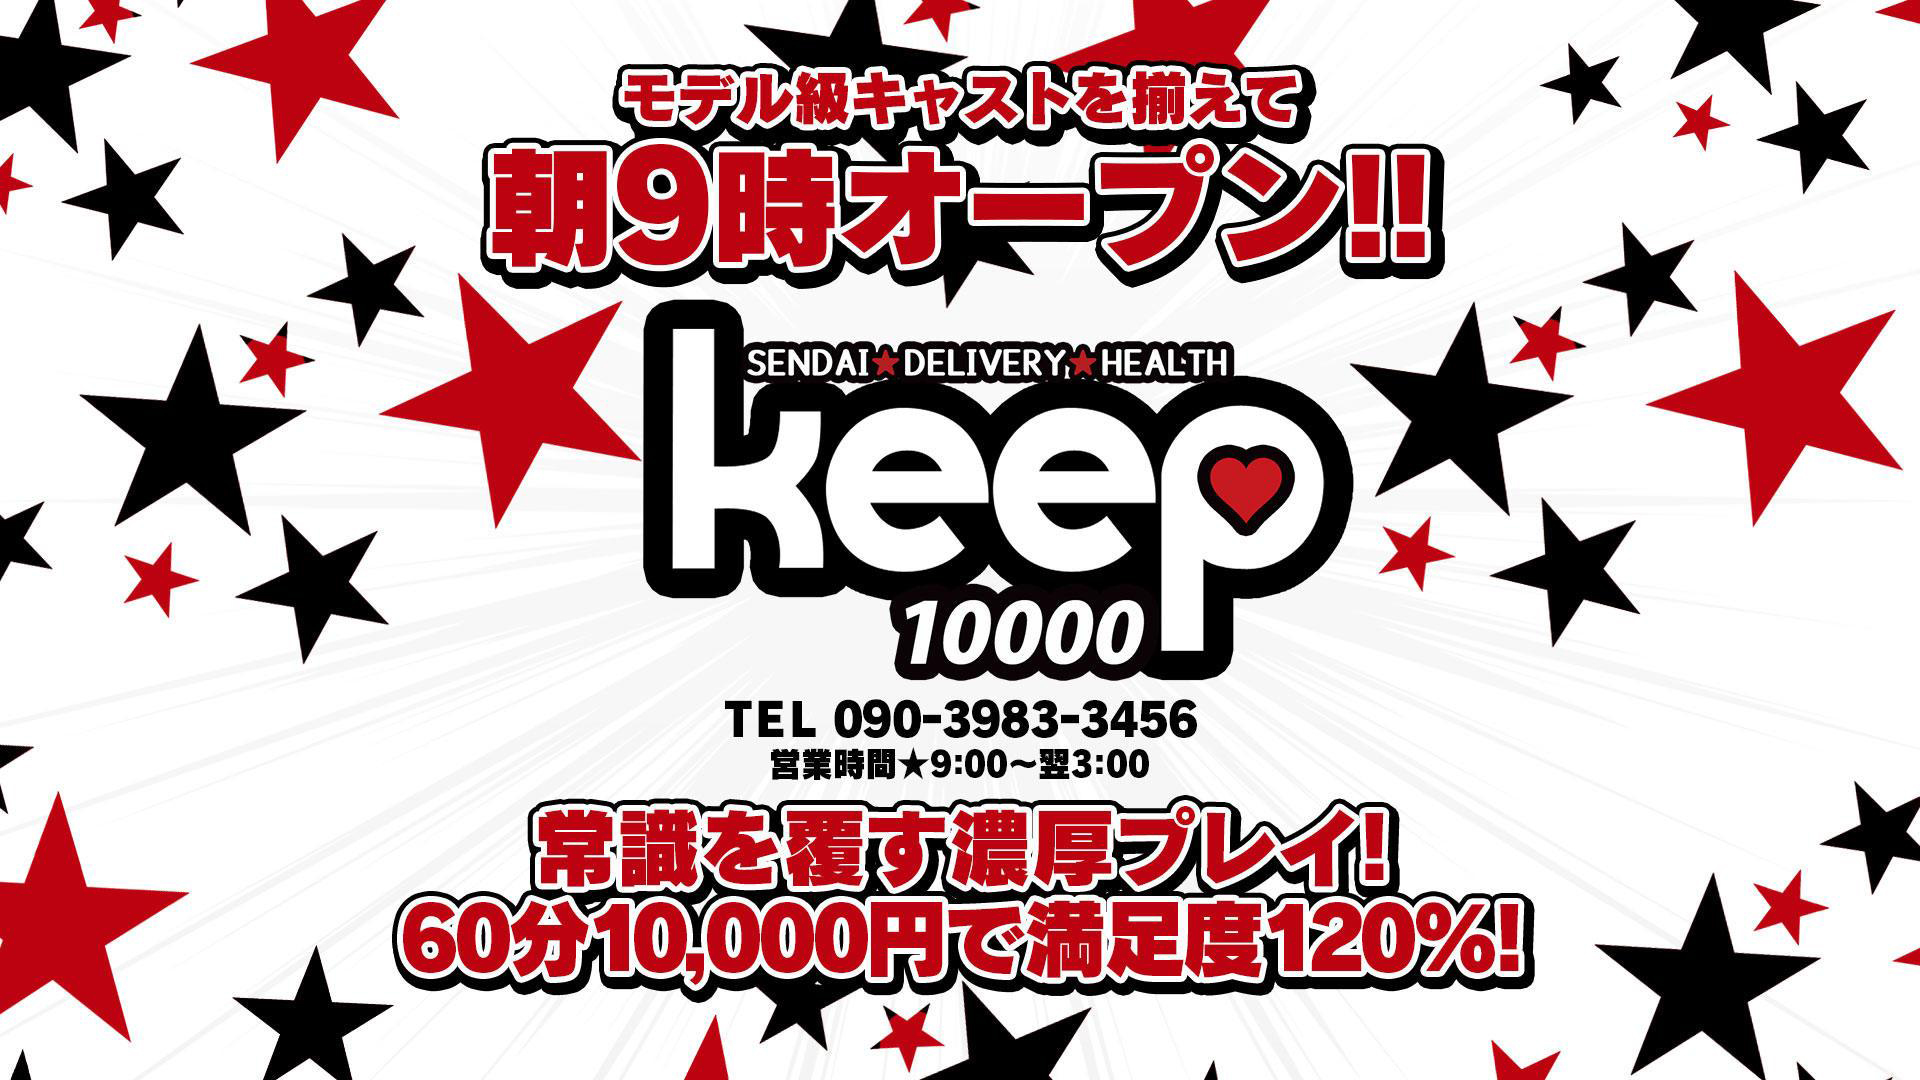 Keep 10000yen